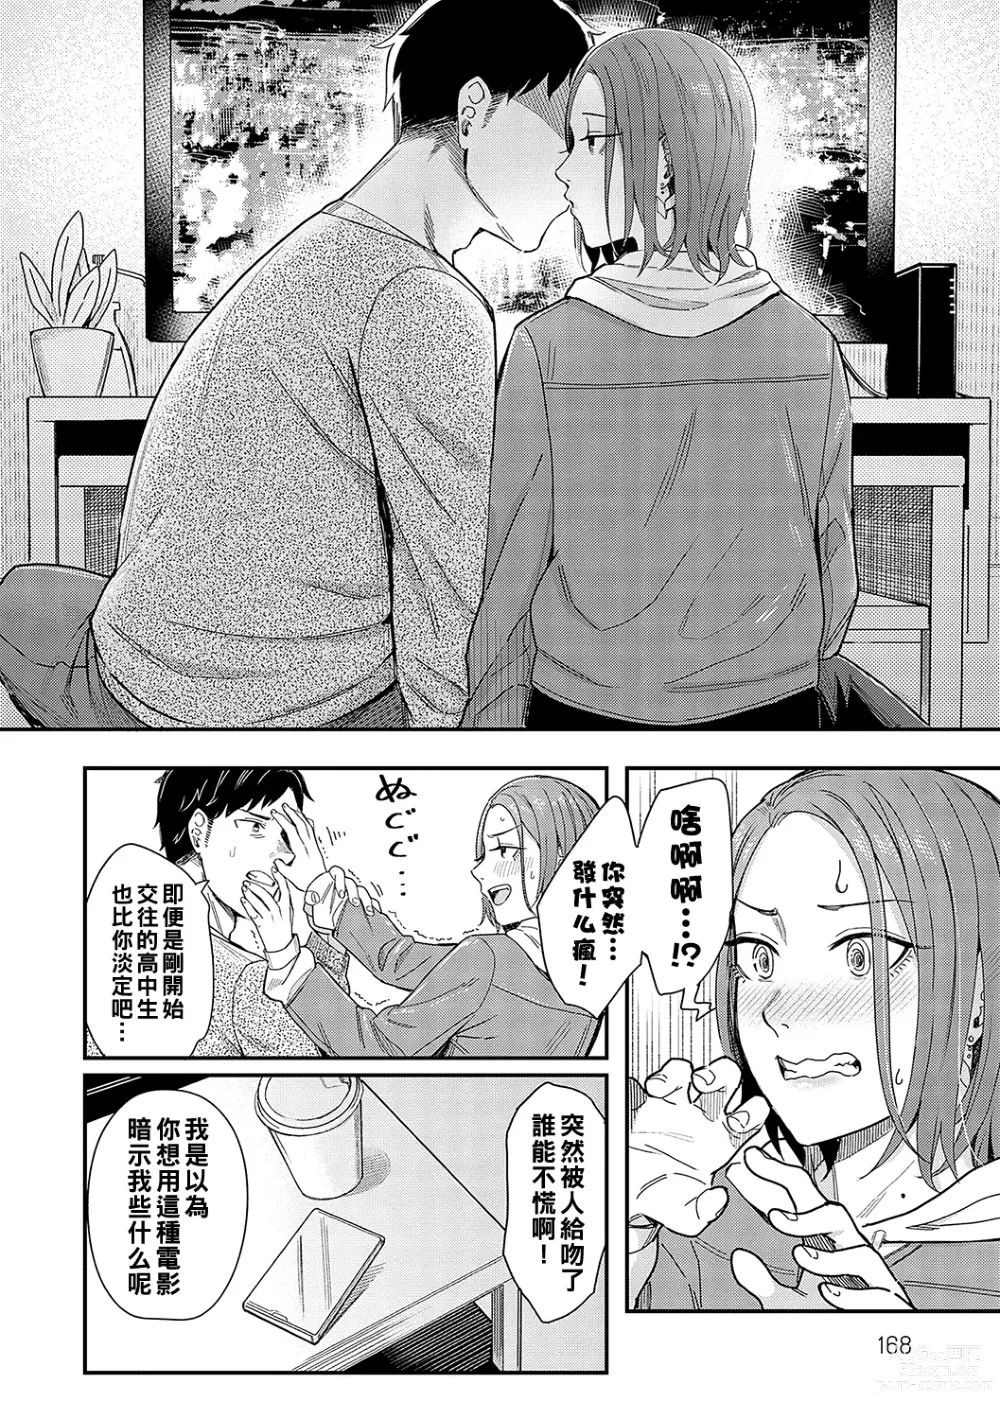 Page 10 of manga Kudaranai Renai Eiga no You ni... - Like a crappy romance movie...